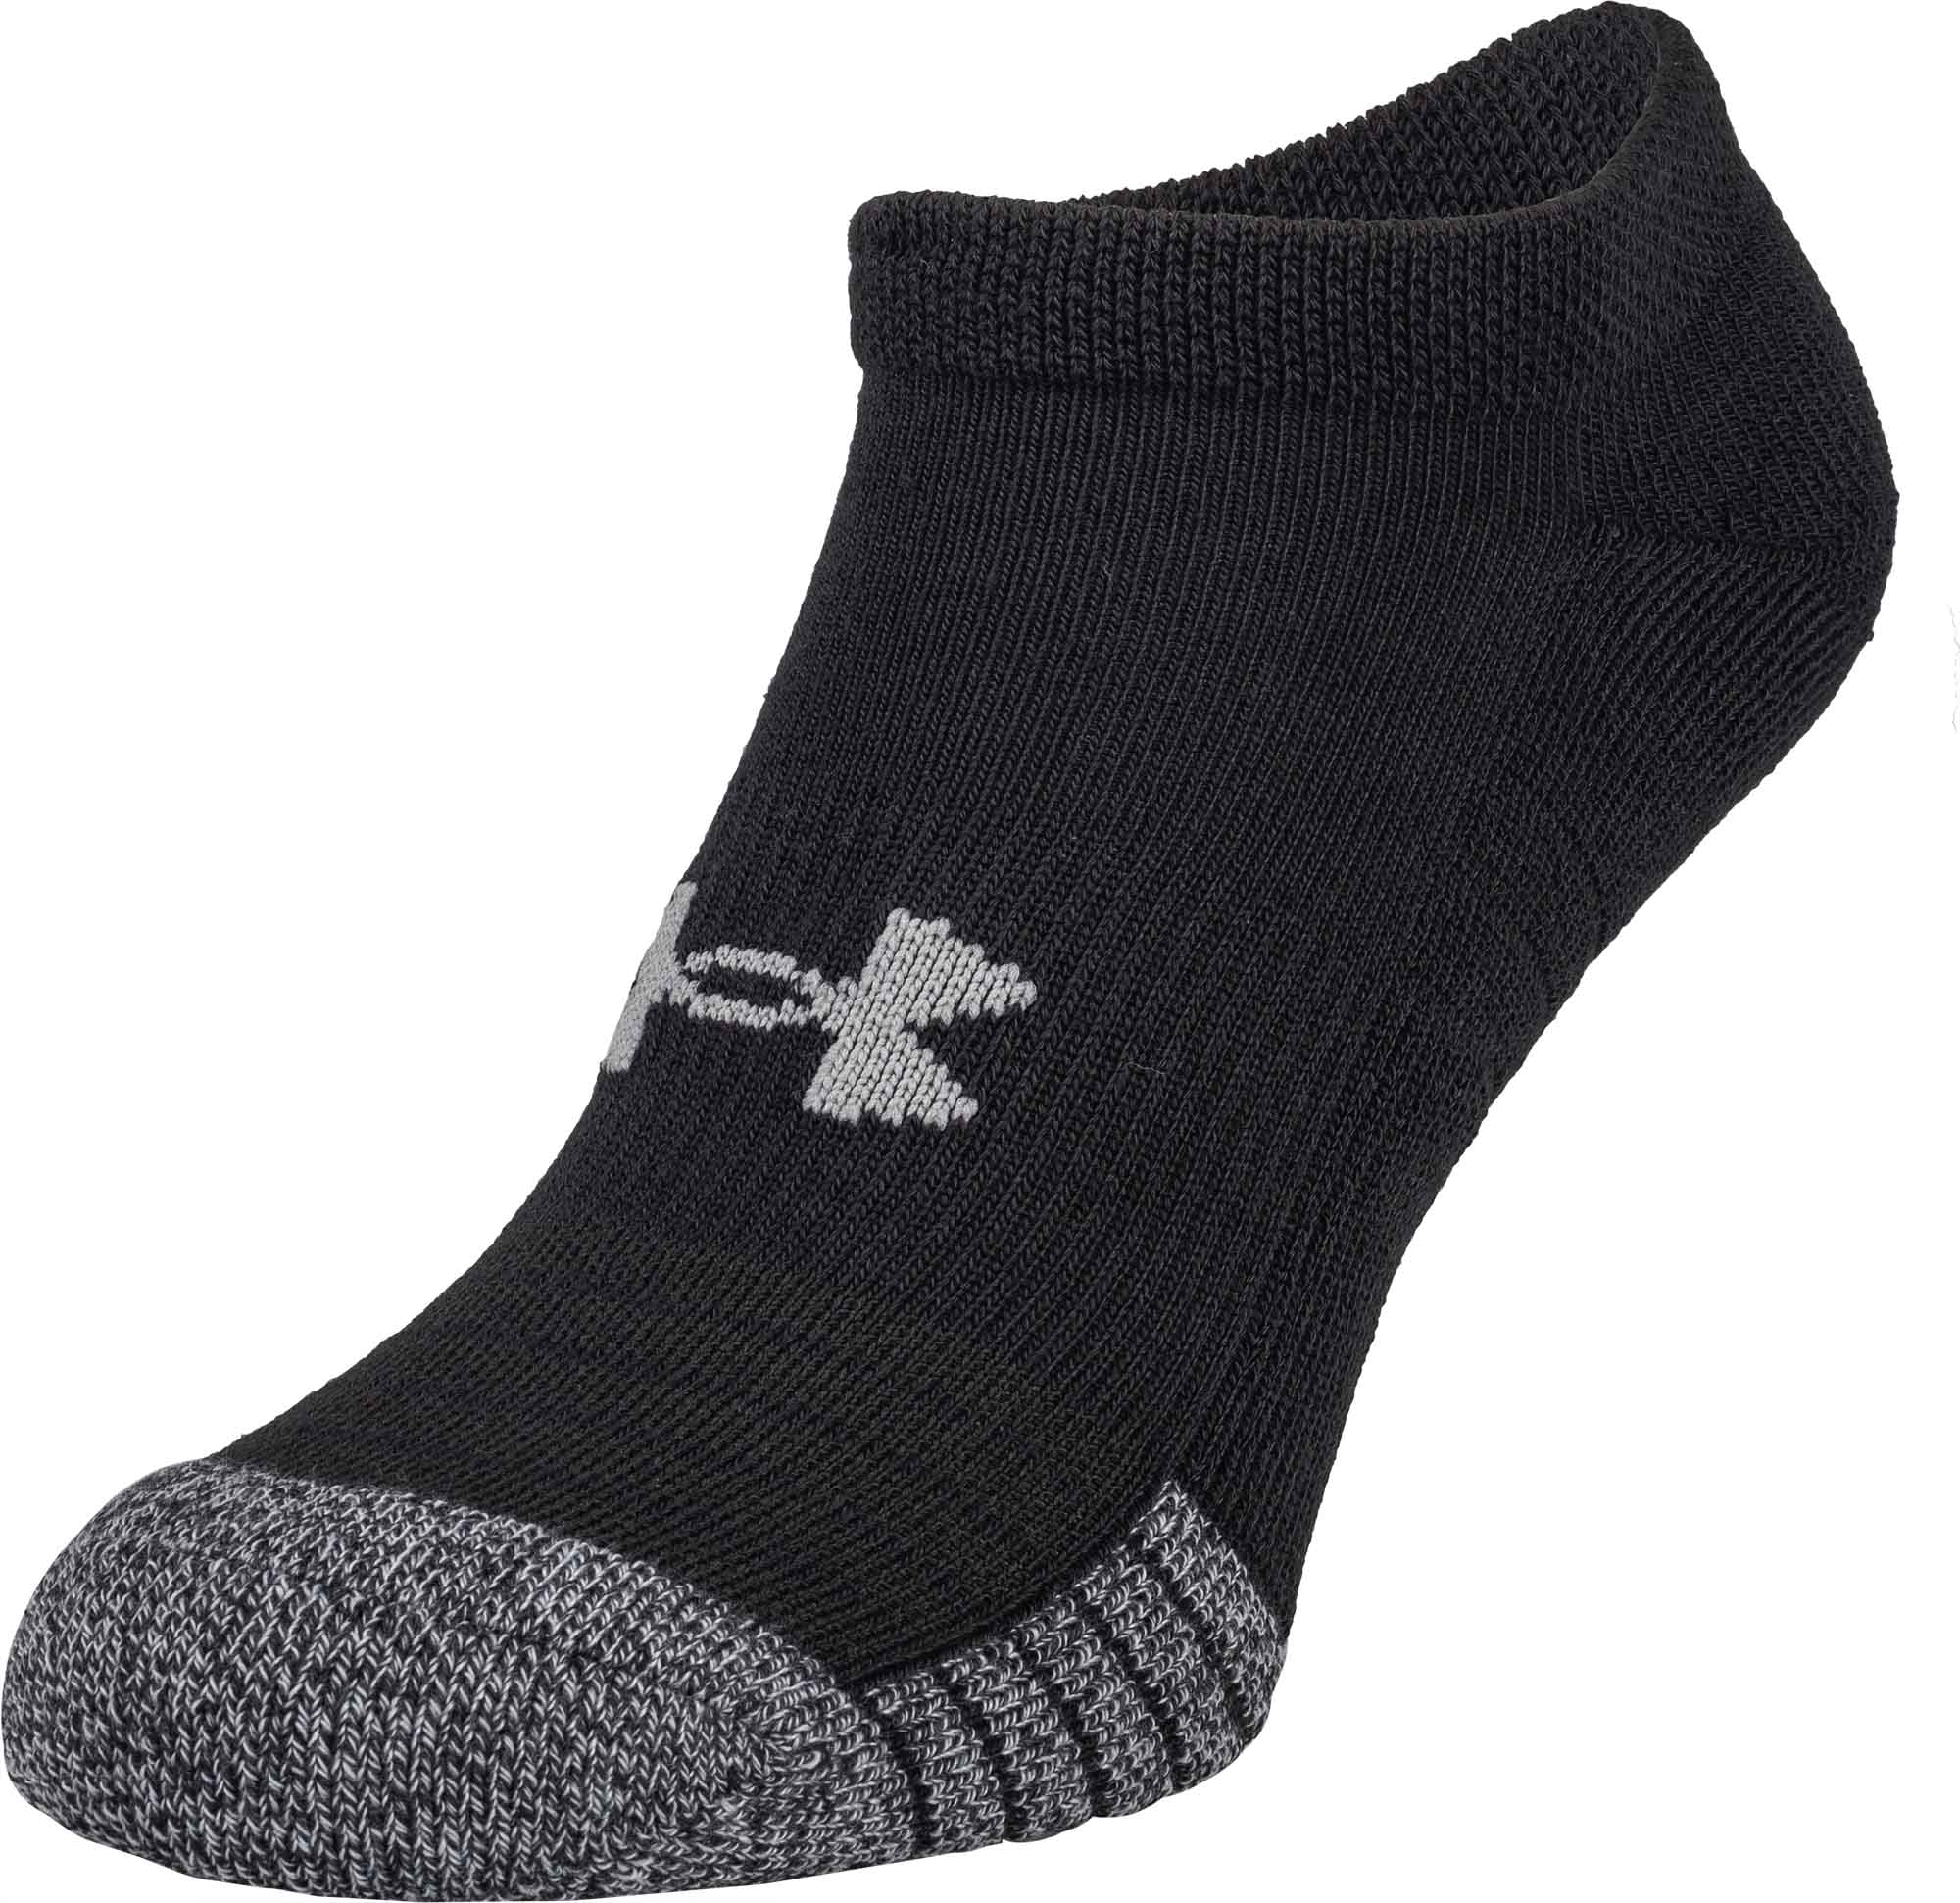 Unisex socks